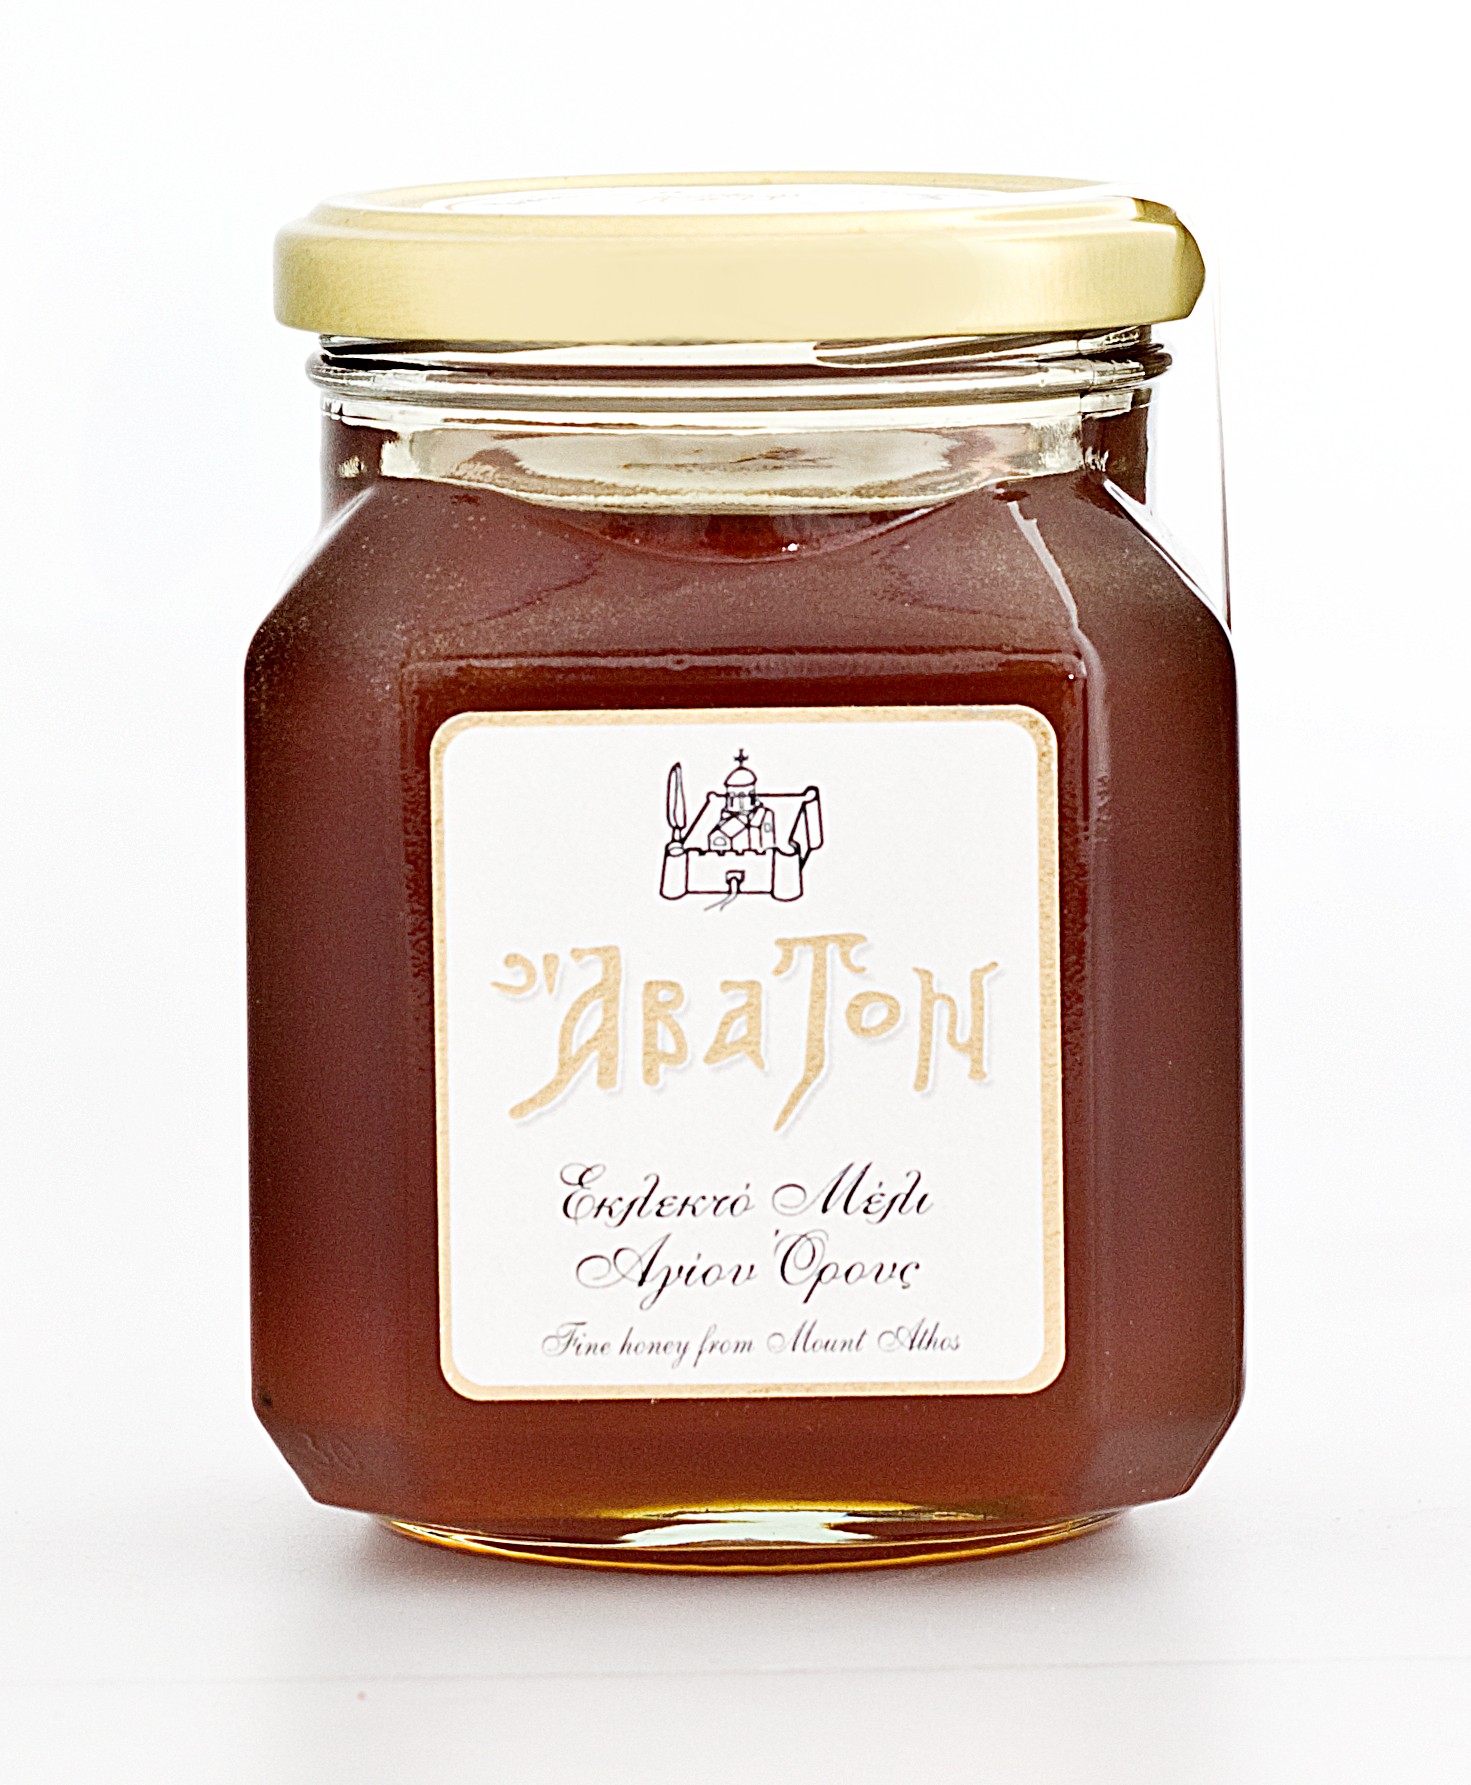 BLOG Gourmet News: Μελωμένη απόλαυση 
	Το μέλι Άβατον με τη βελούδινη υφή, τη φίνα γεύση και τα θρεπτικά συστατικά σου αποκαλύπτει ένα γλυκό κόσμο στην πρώτη κιόλας κουταλιά.